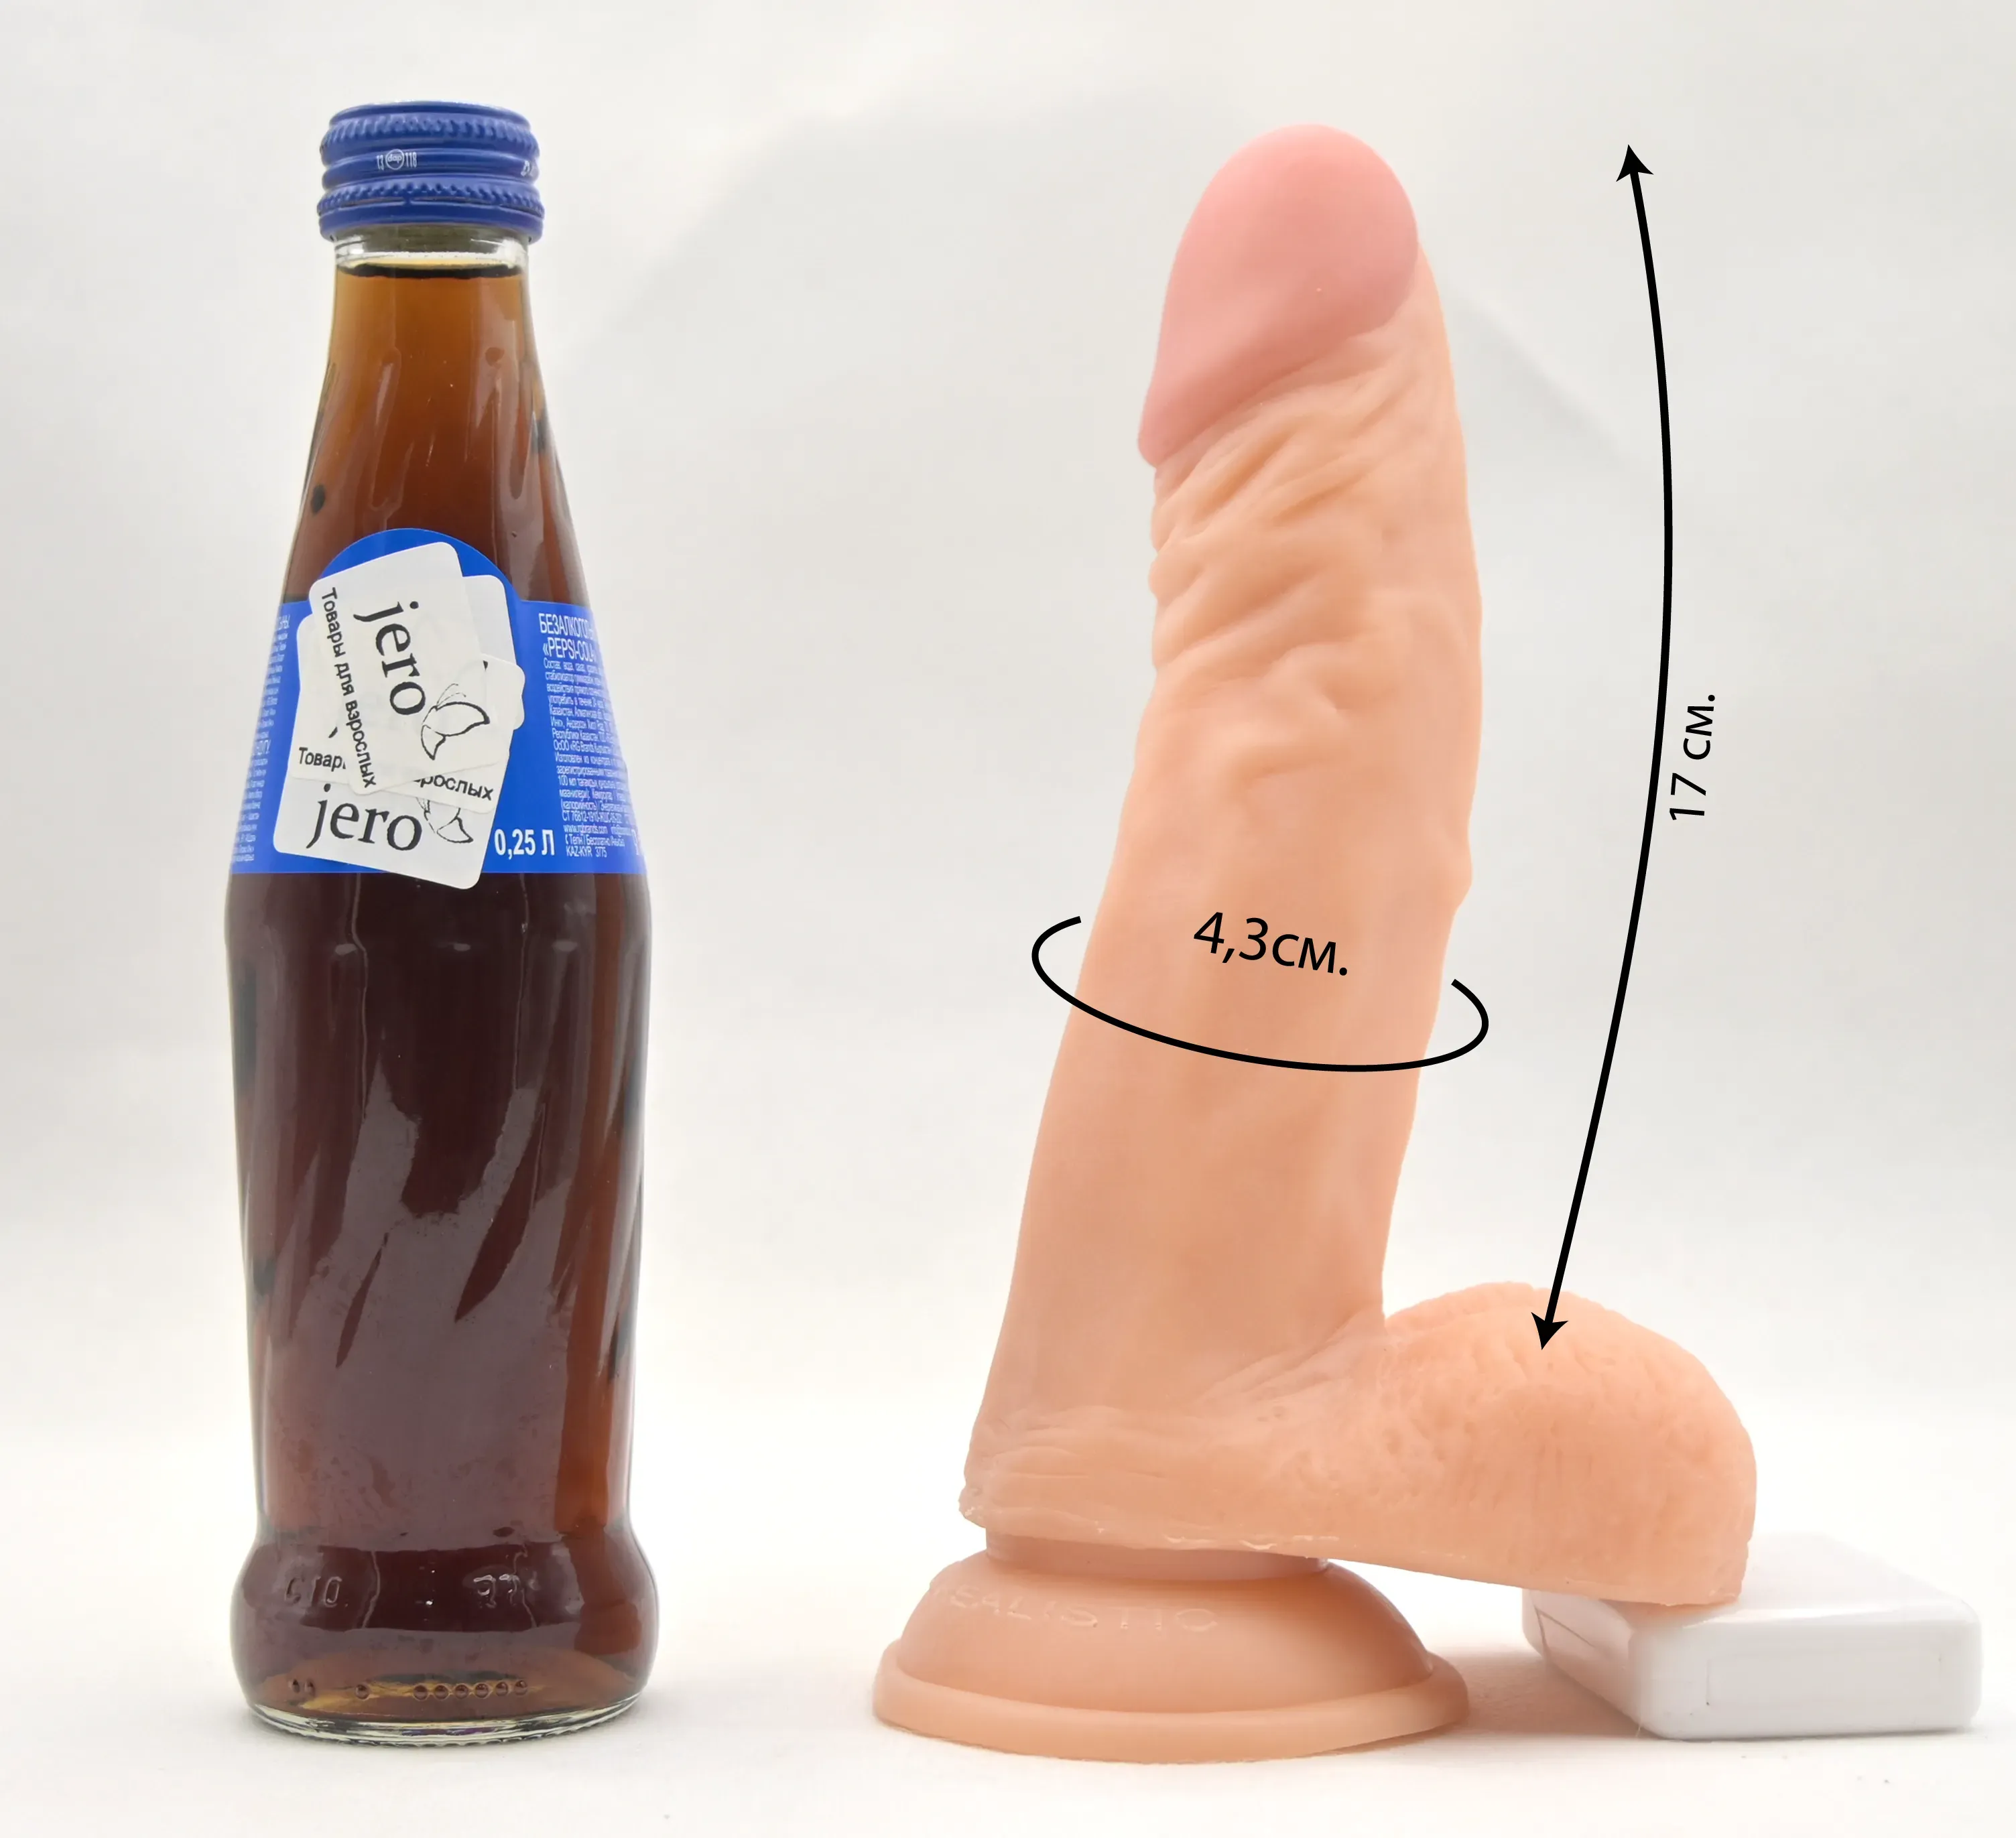 Фото с размерами и сравнение с бутылкой пепси